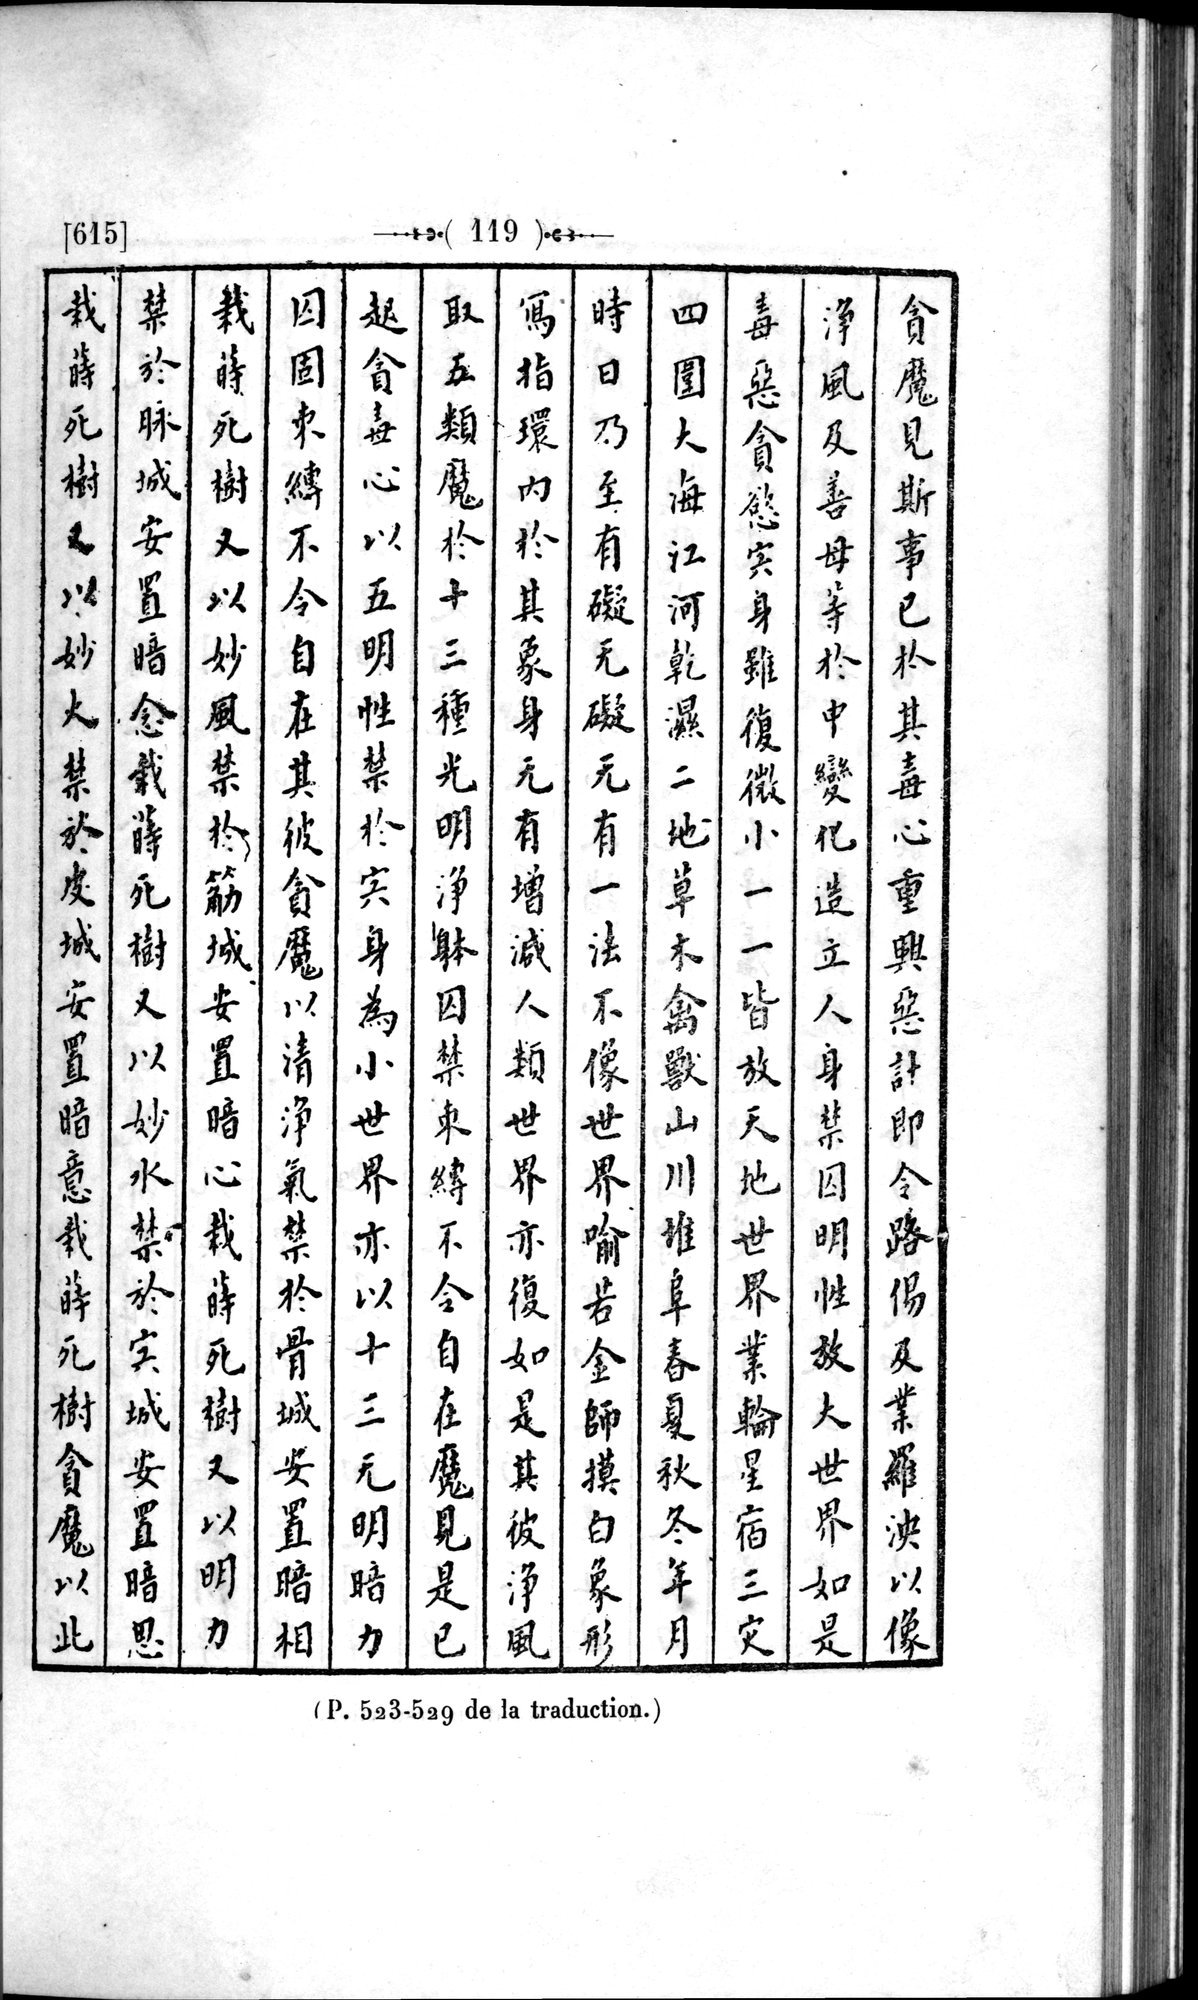 Un traité manichéen retrouvé en Chine : vol.1 / Page 129 (Grayscale High Resolution Image)